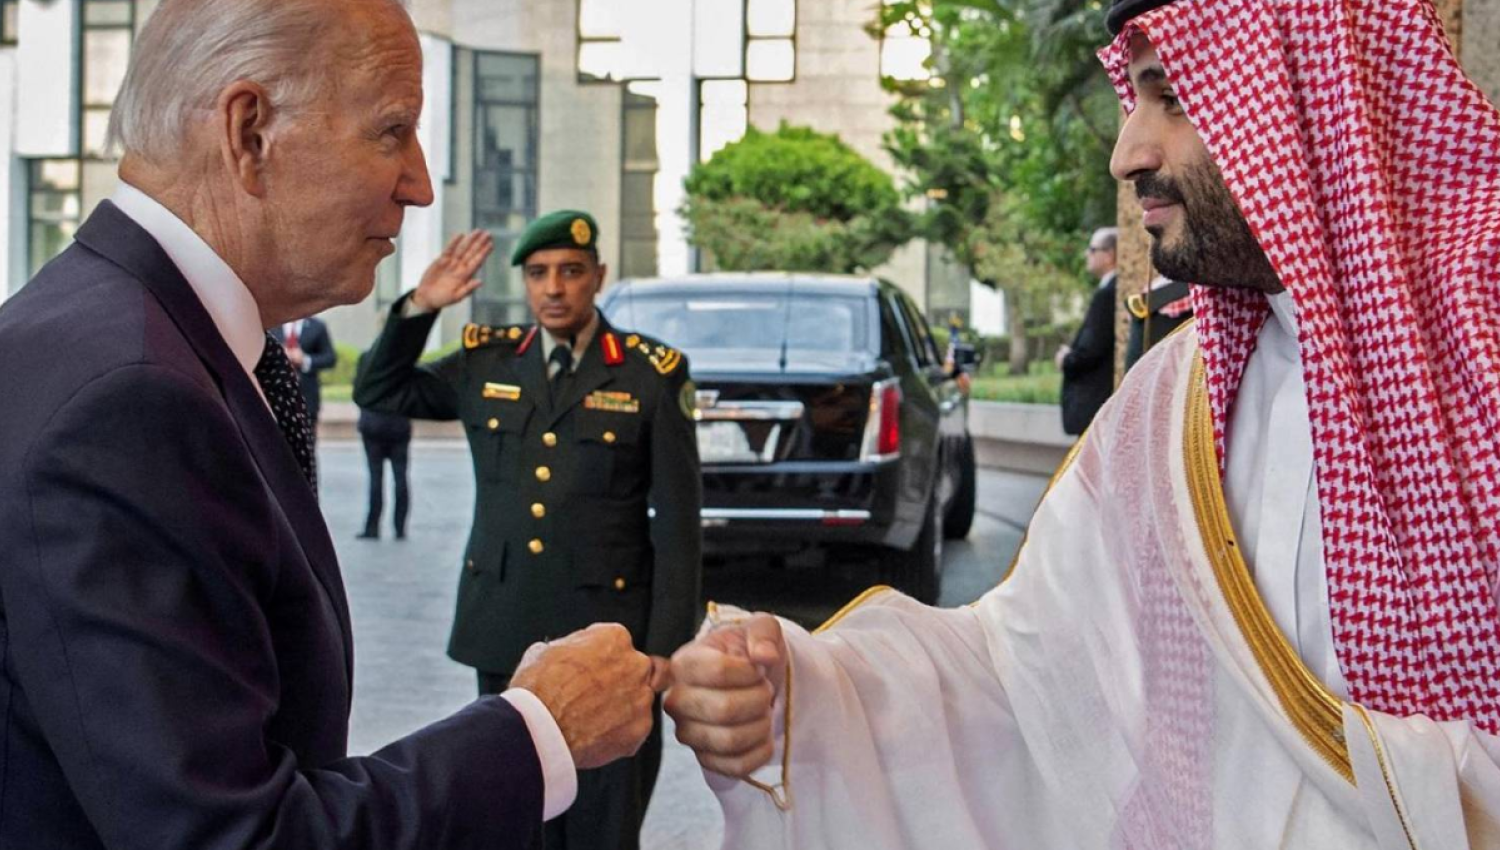 וושינגטון פוסט: הסכם הנורמליזציה הסעודית-ישראלית מתה!